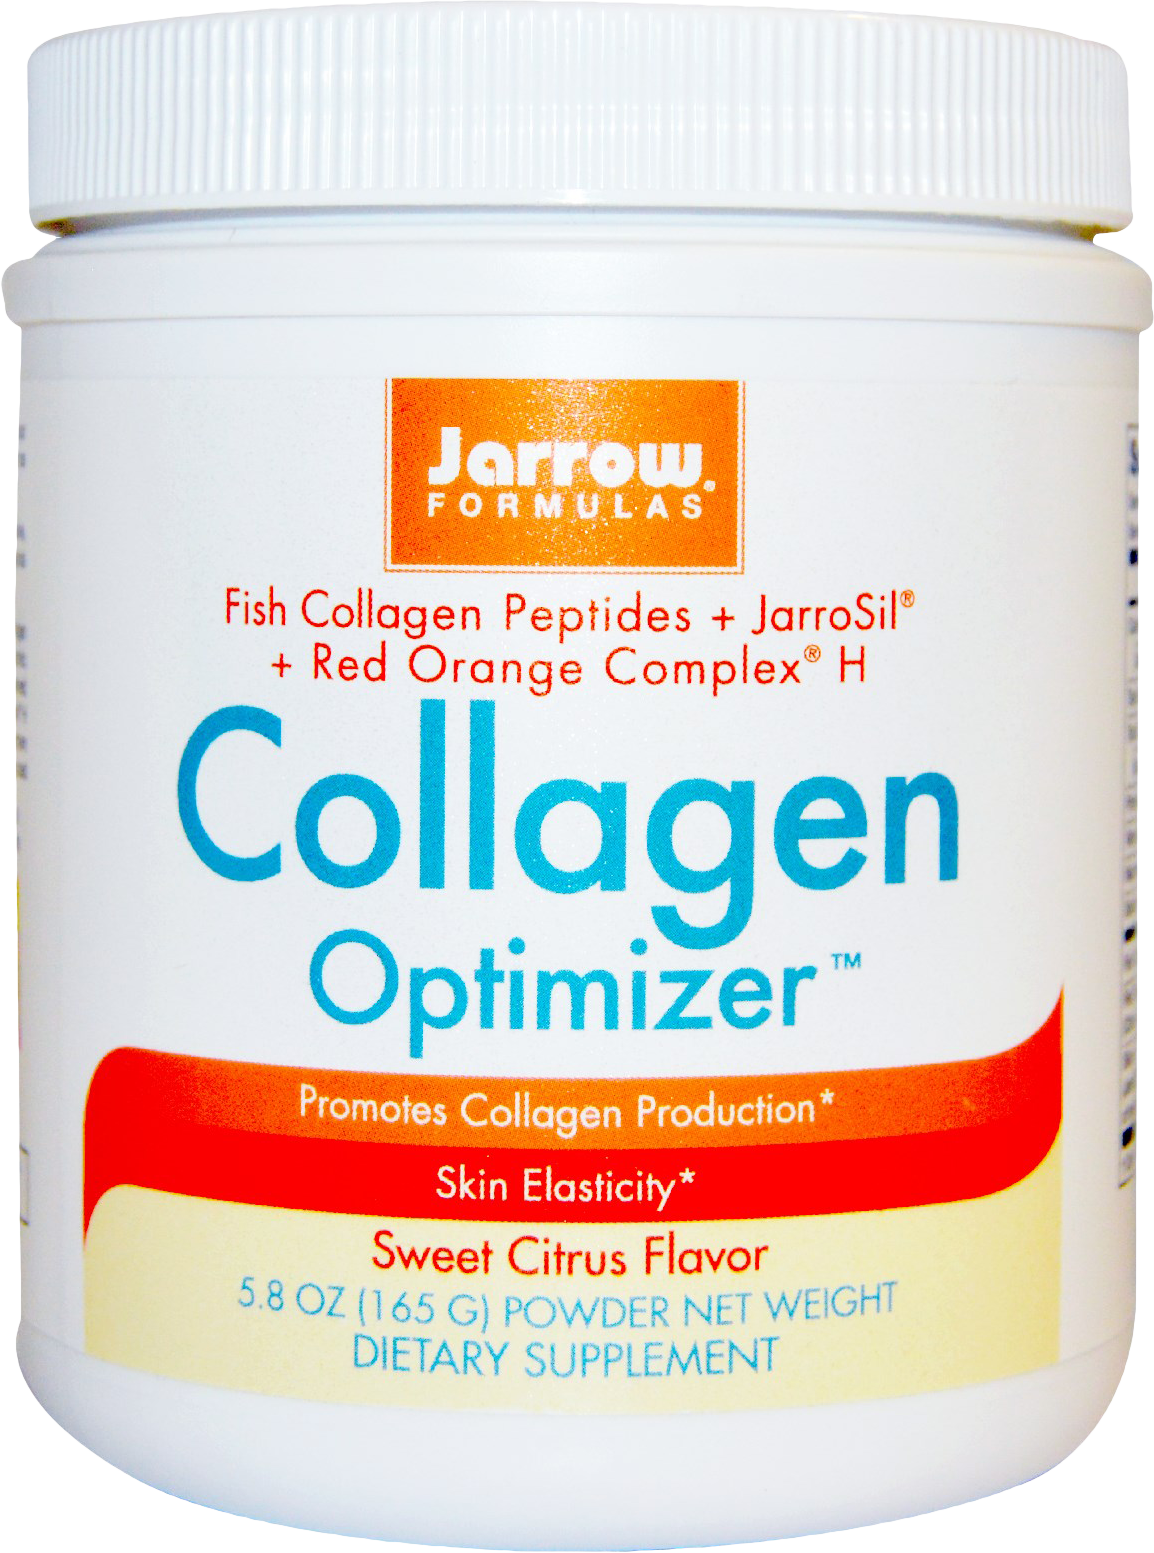 Collagen Optimizer - BadiZdrav.BG